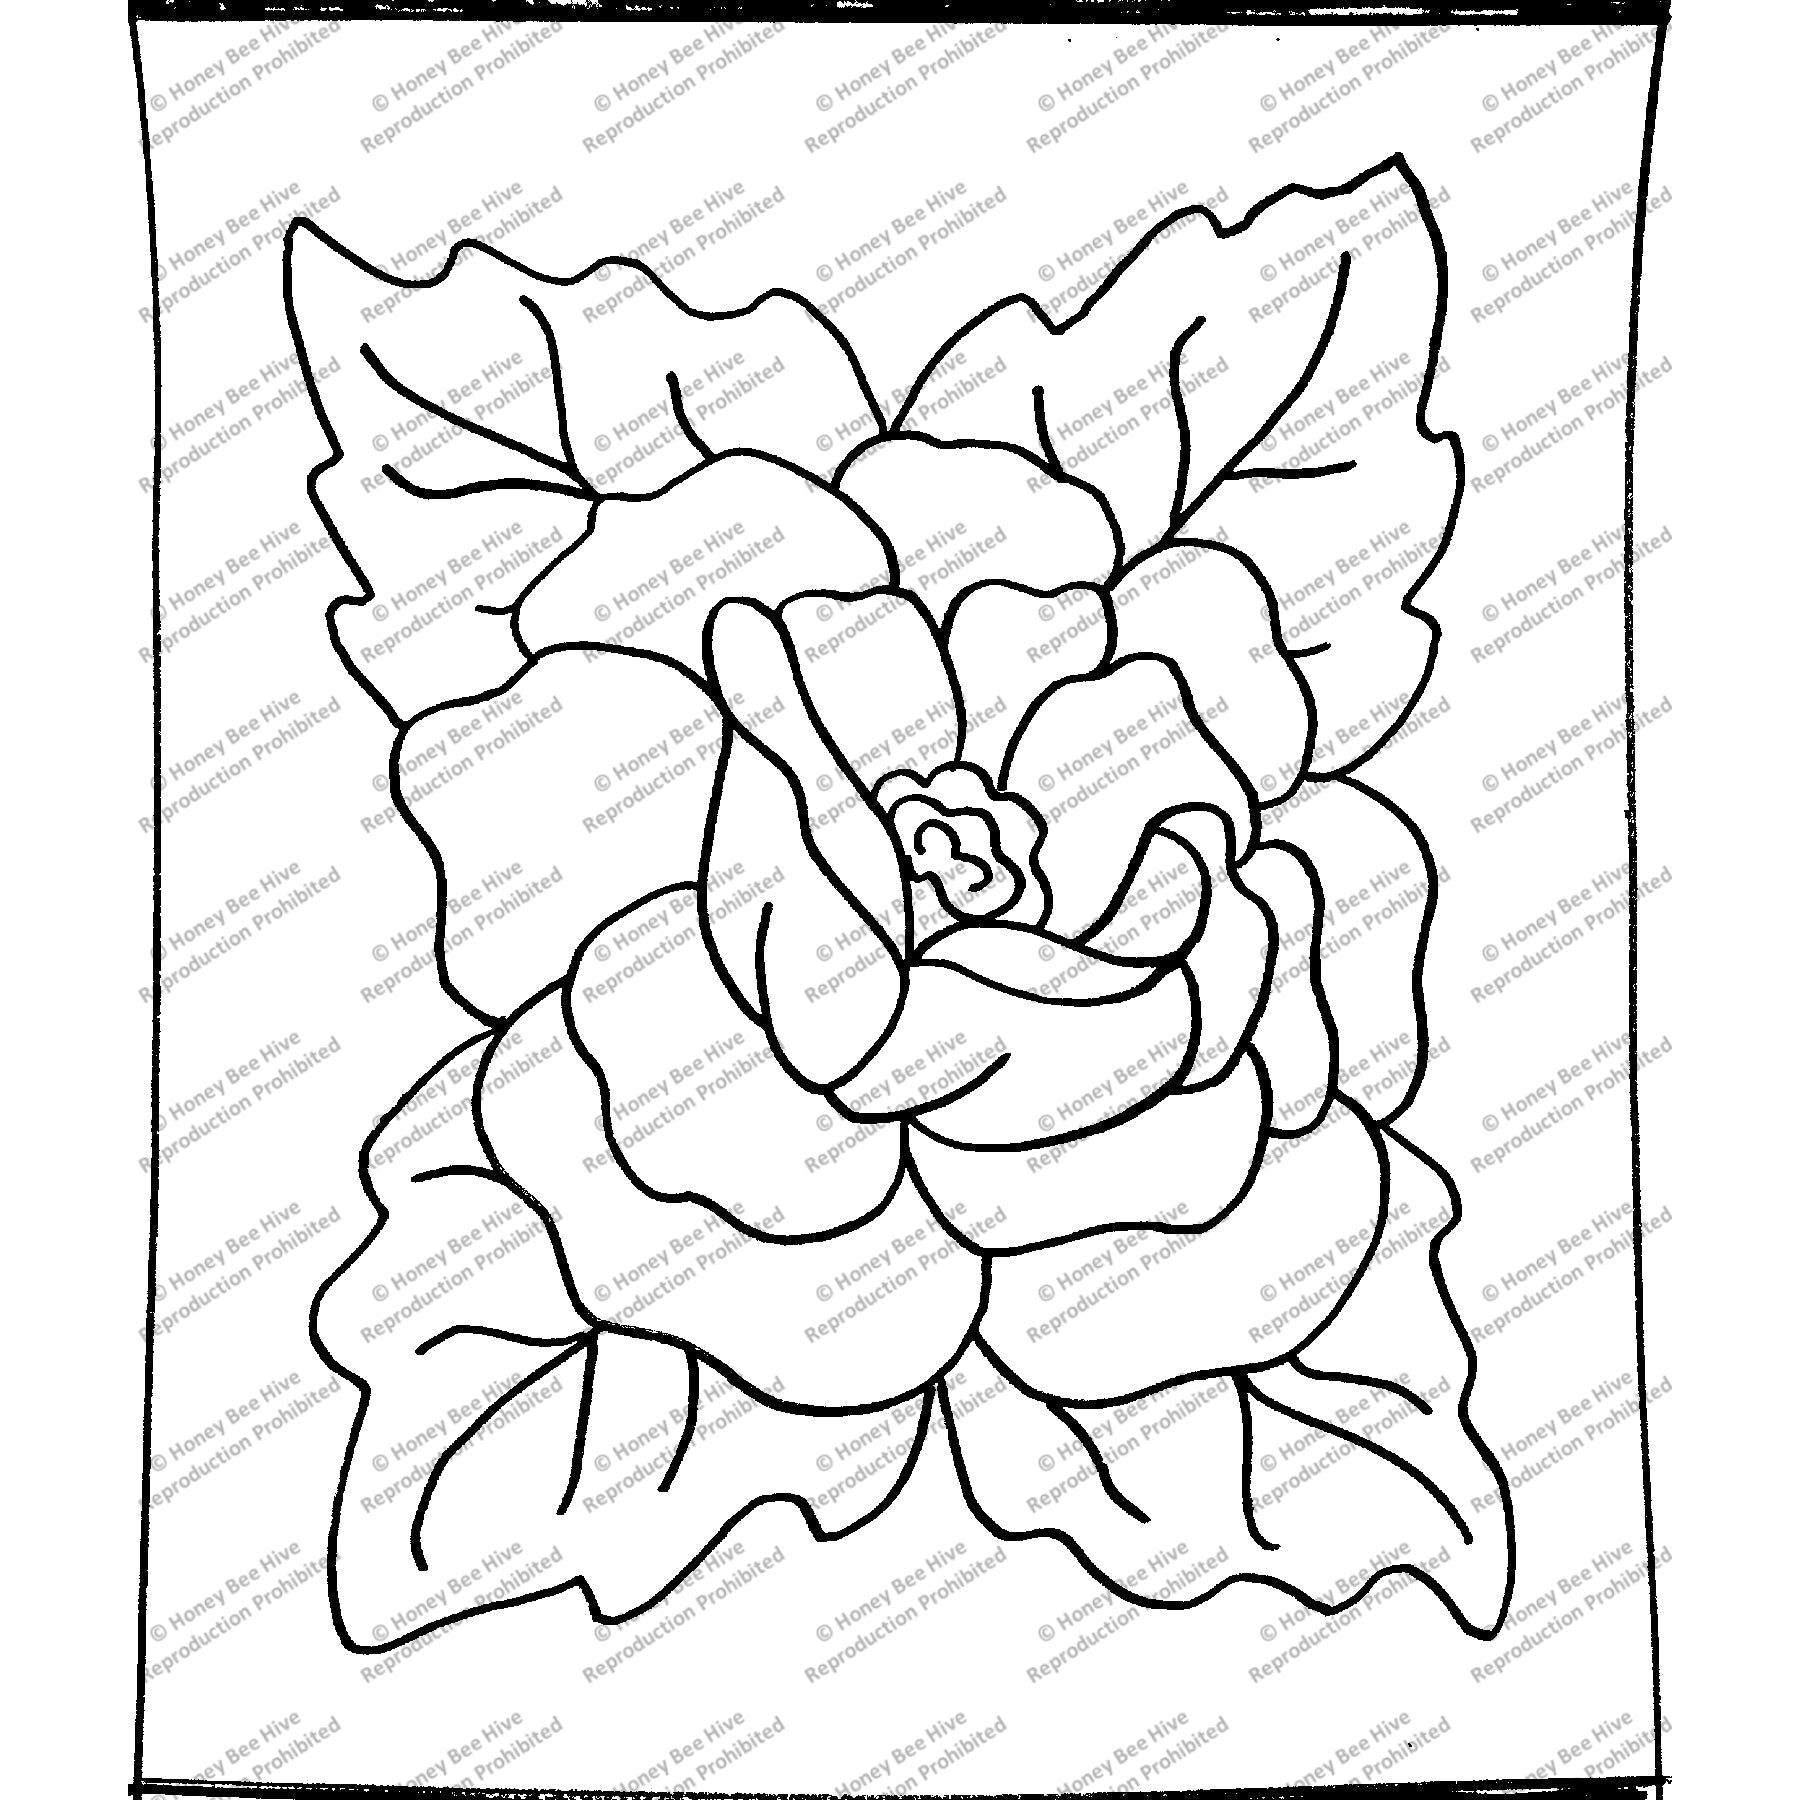 Alma's Reunion Rose, rug hooking pattern